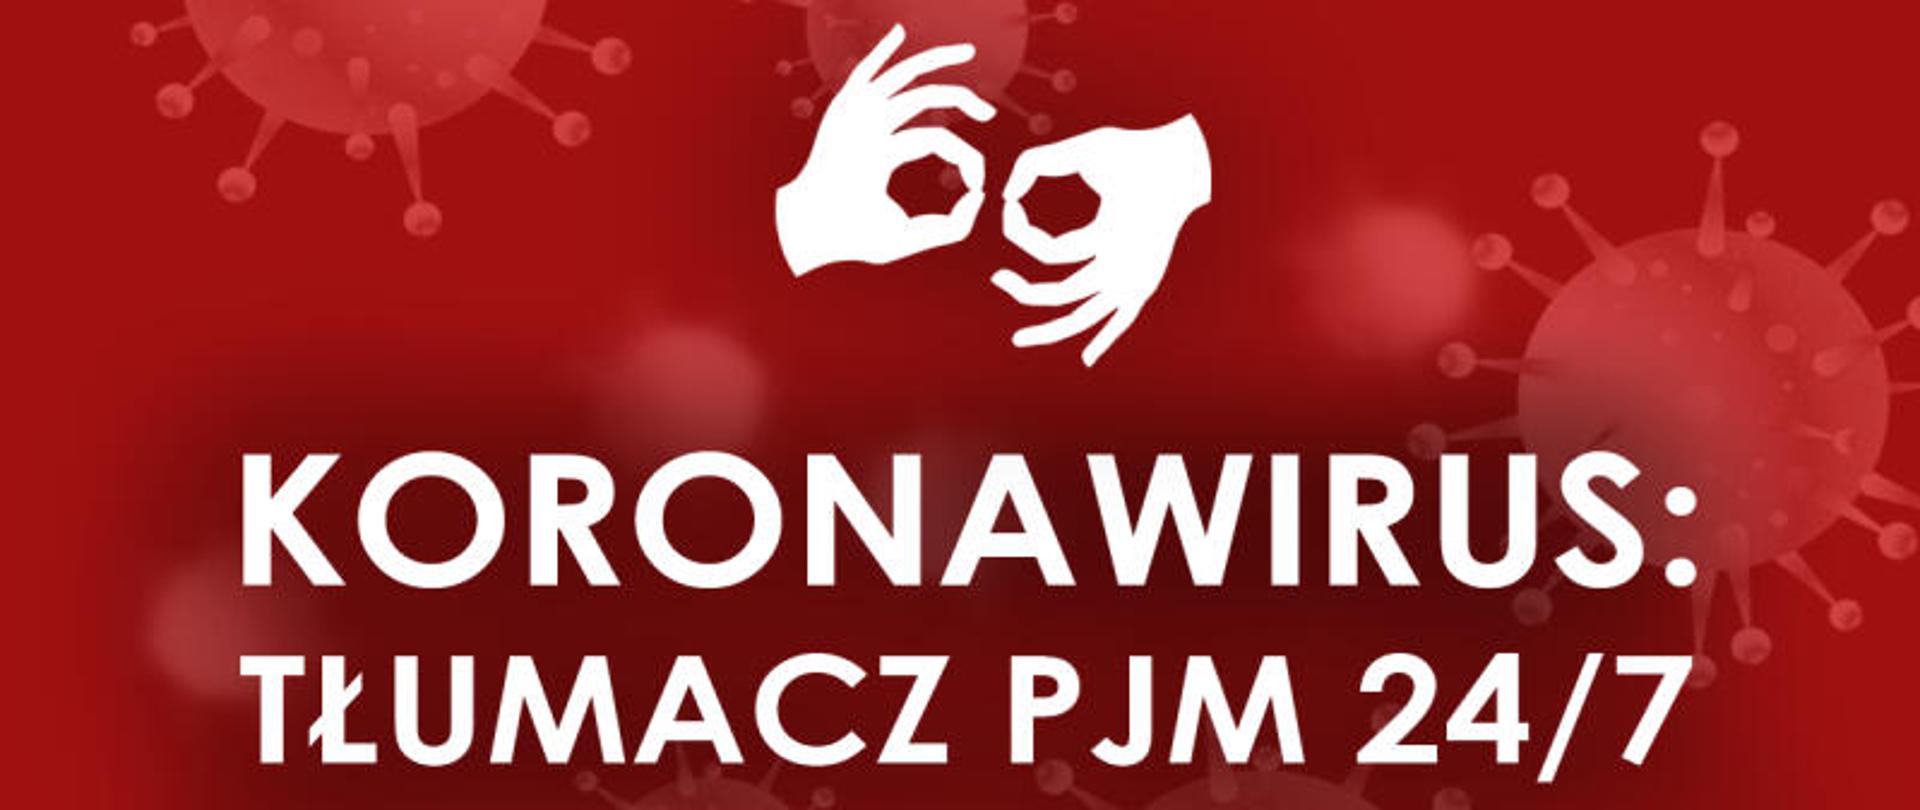 Koronawirus - tłumacz dla głuchych PJM 24/7